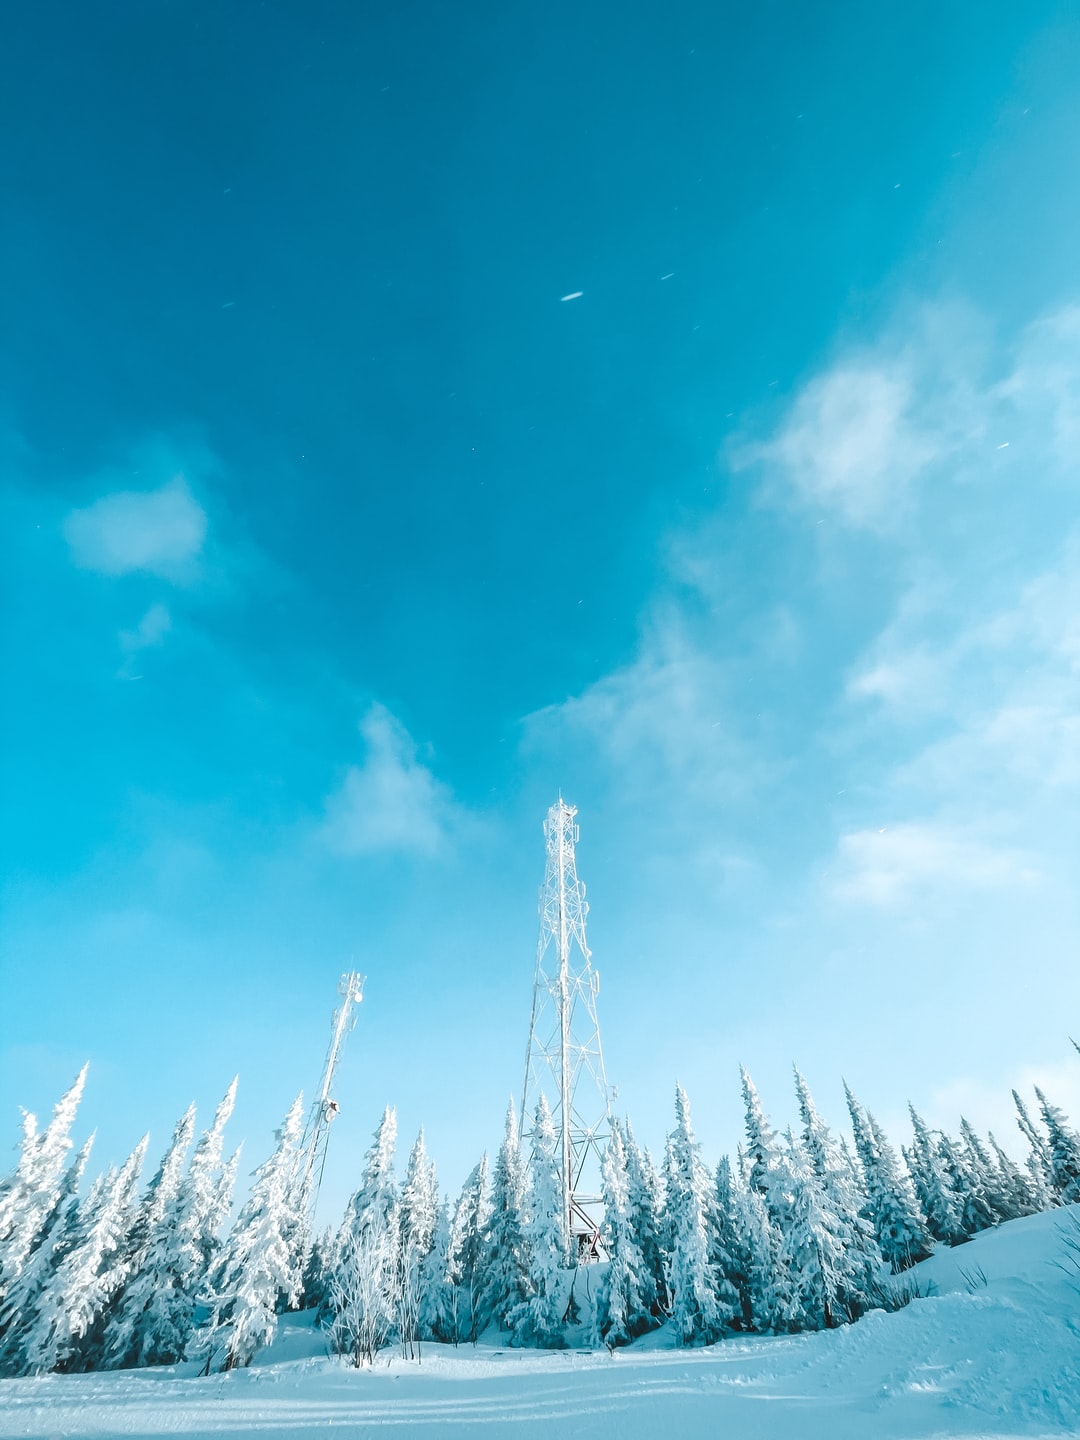 蓝天,森林,白天,冬季